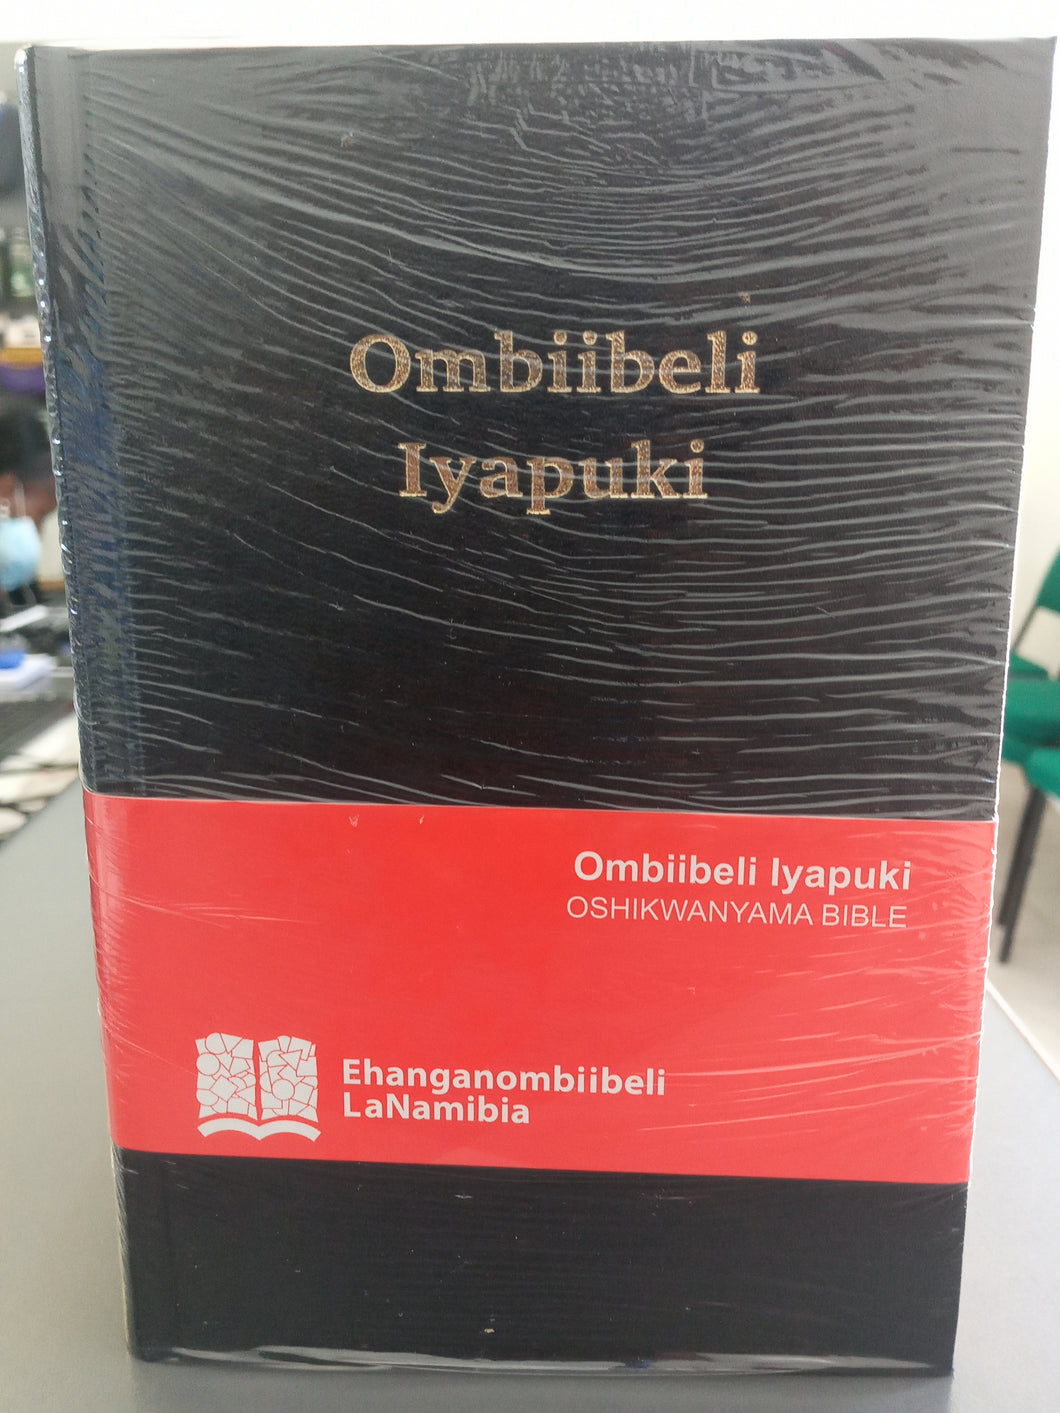 Ombiibeli Iyapuki Bible